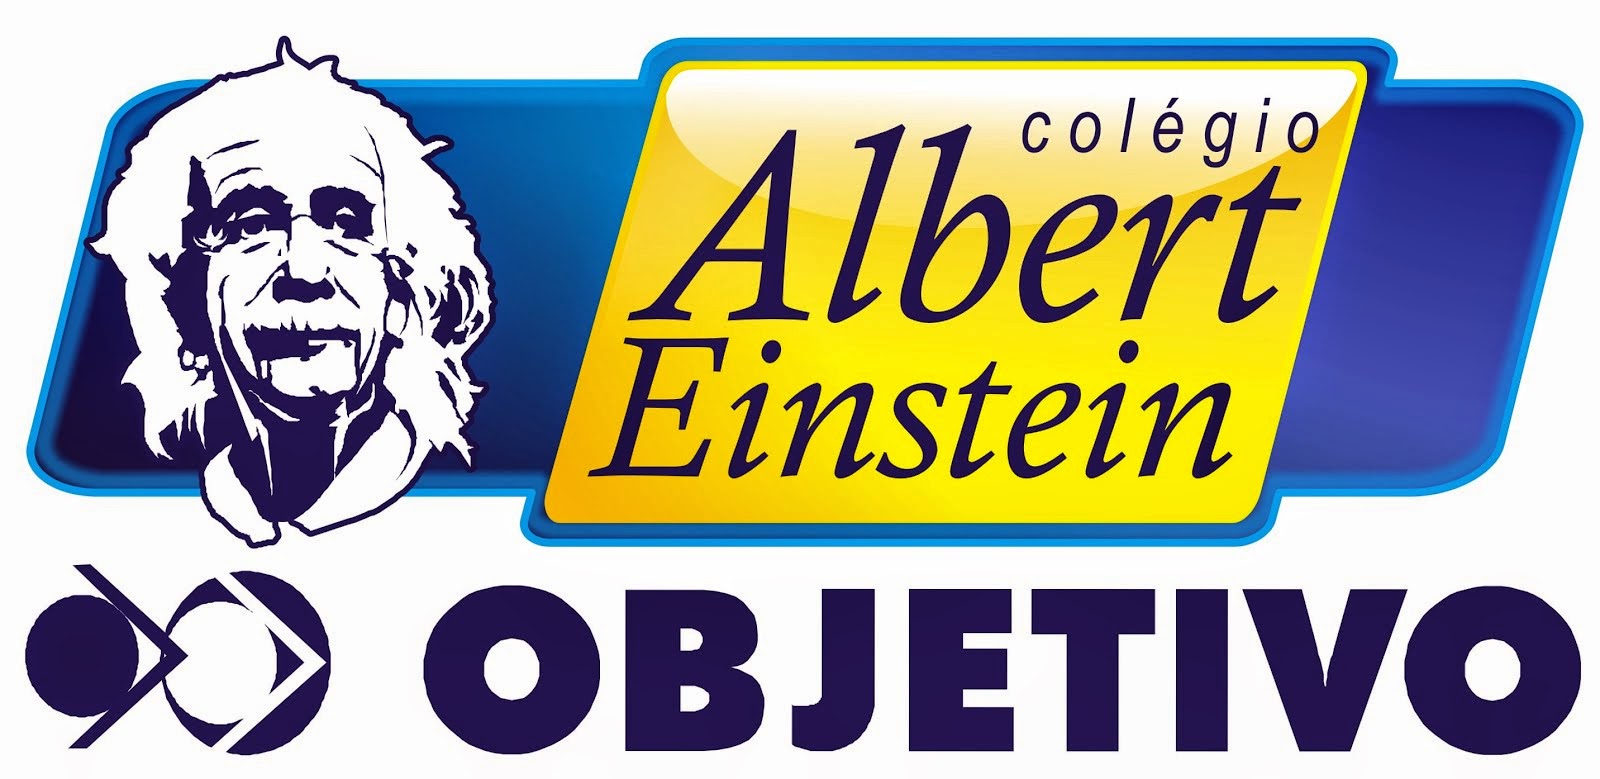 COLÉGIO ALBERT EINSTEIN